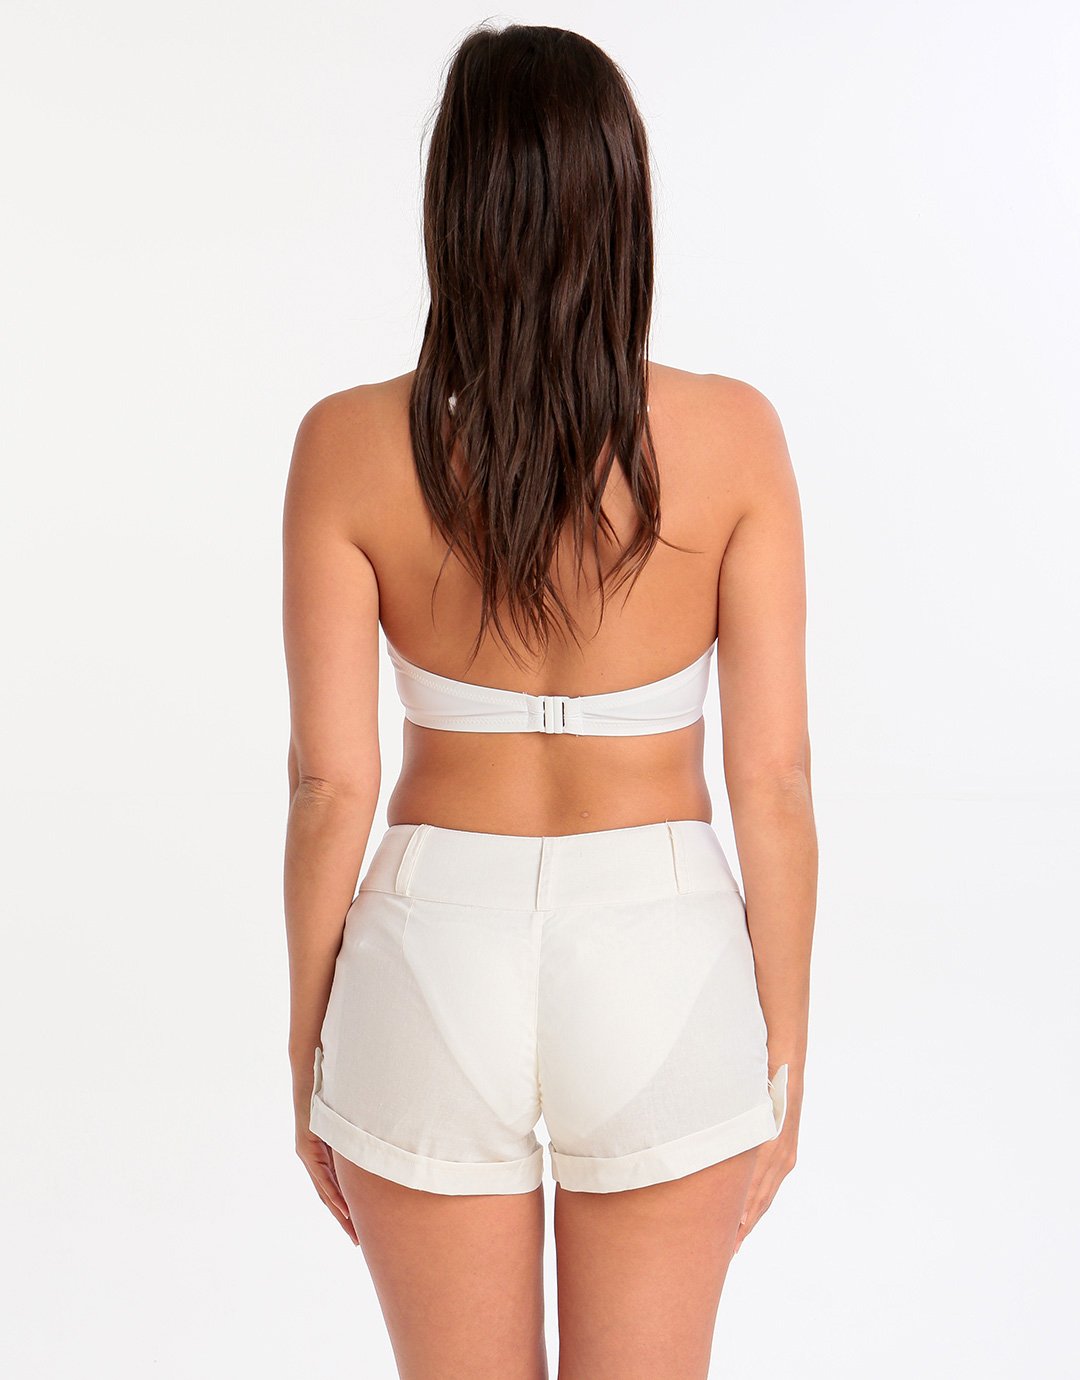 Phax Beachwear Shorts - White